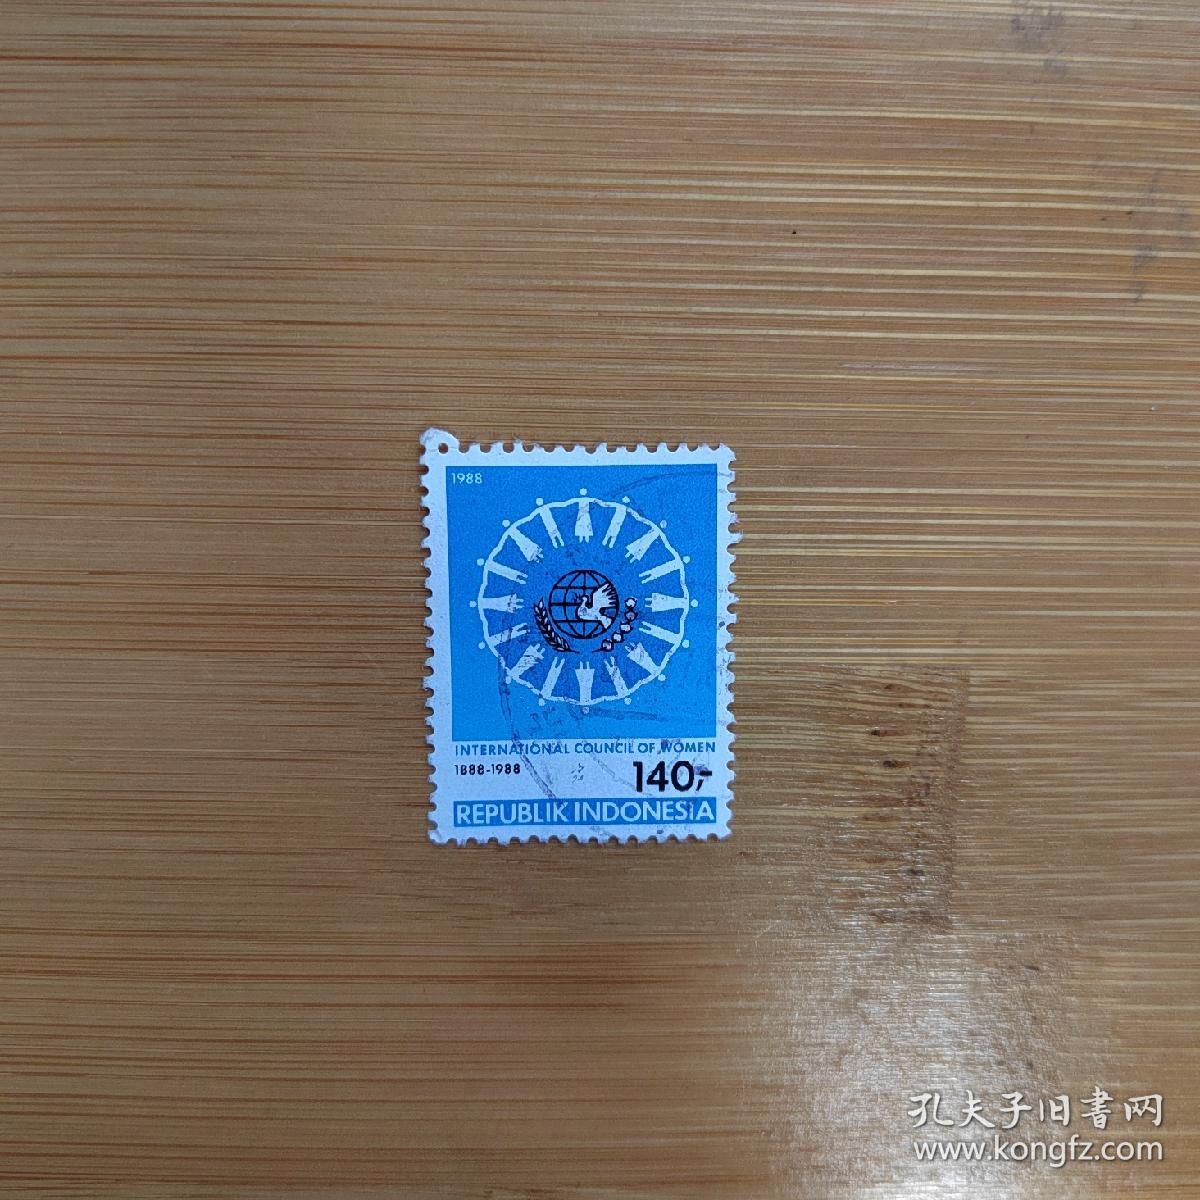 外国邮票 印度尼西亚邮票1988年和平鸽等图案 信销1枚 如图